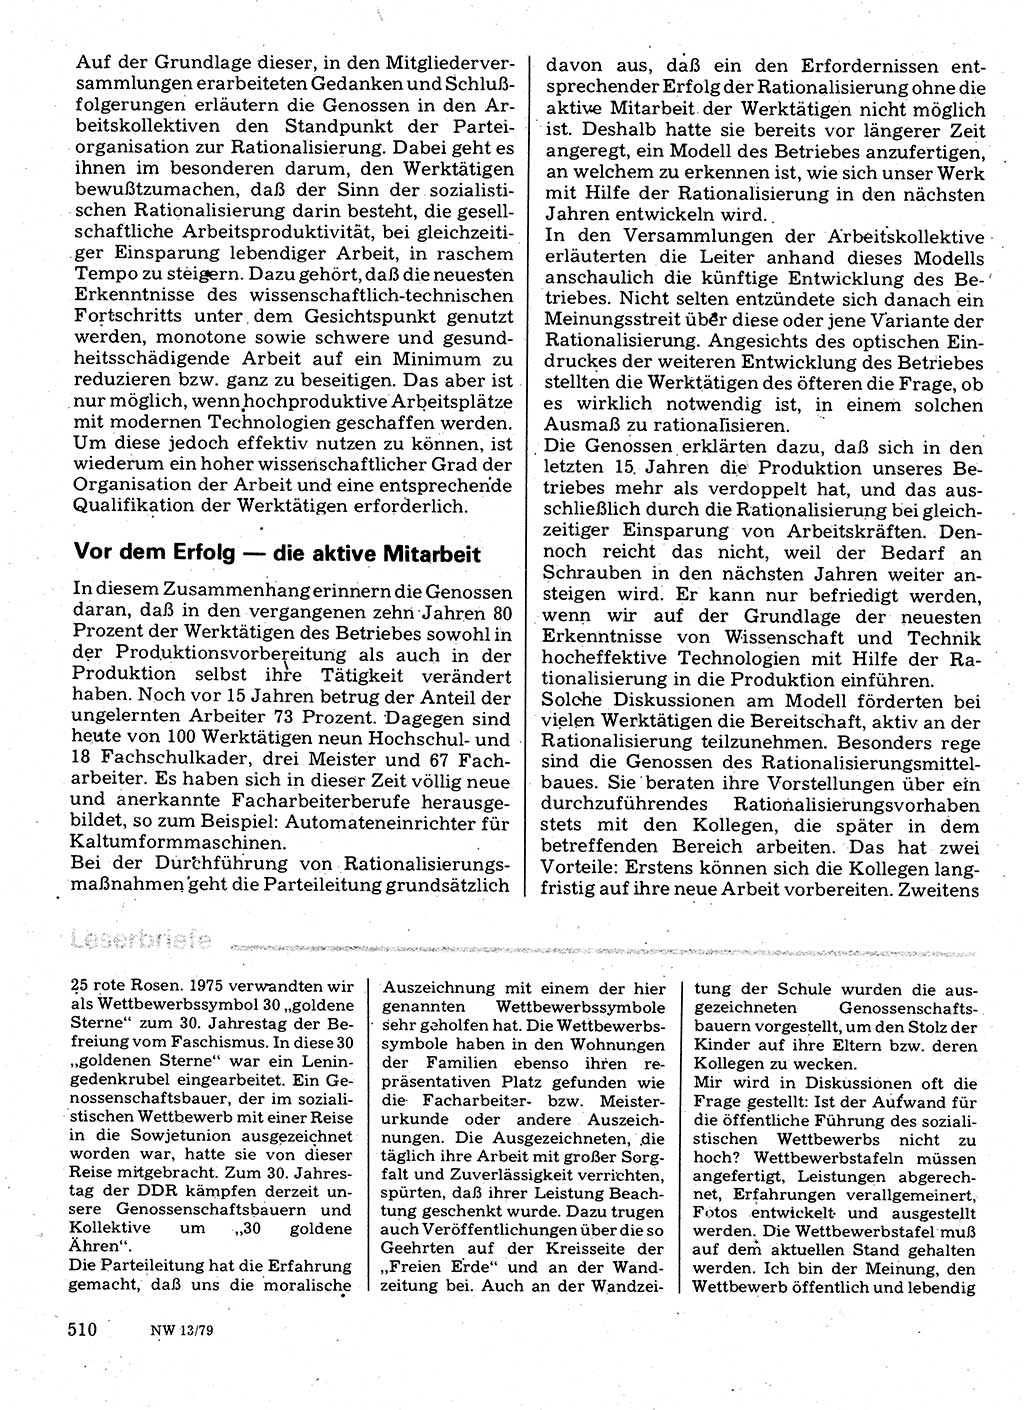 Neuer Weg (NW), Organ des Zentralkomitees (ZK) der SED (Sozialistische Einheitspartei Deutschlands) für Fragen des Parteilebens, 34. Jahrgang [Deutsche Demokratische Republik (DDR)] 1979, Seite 510 (NW ZK SED DDR 1979, S. 510)